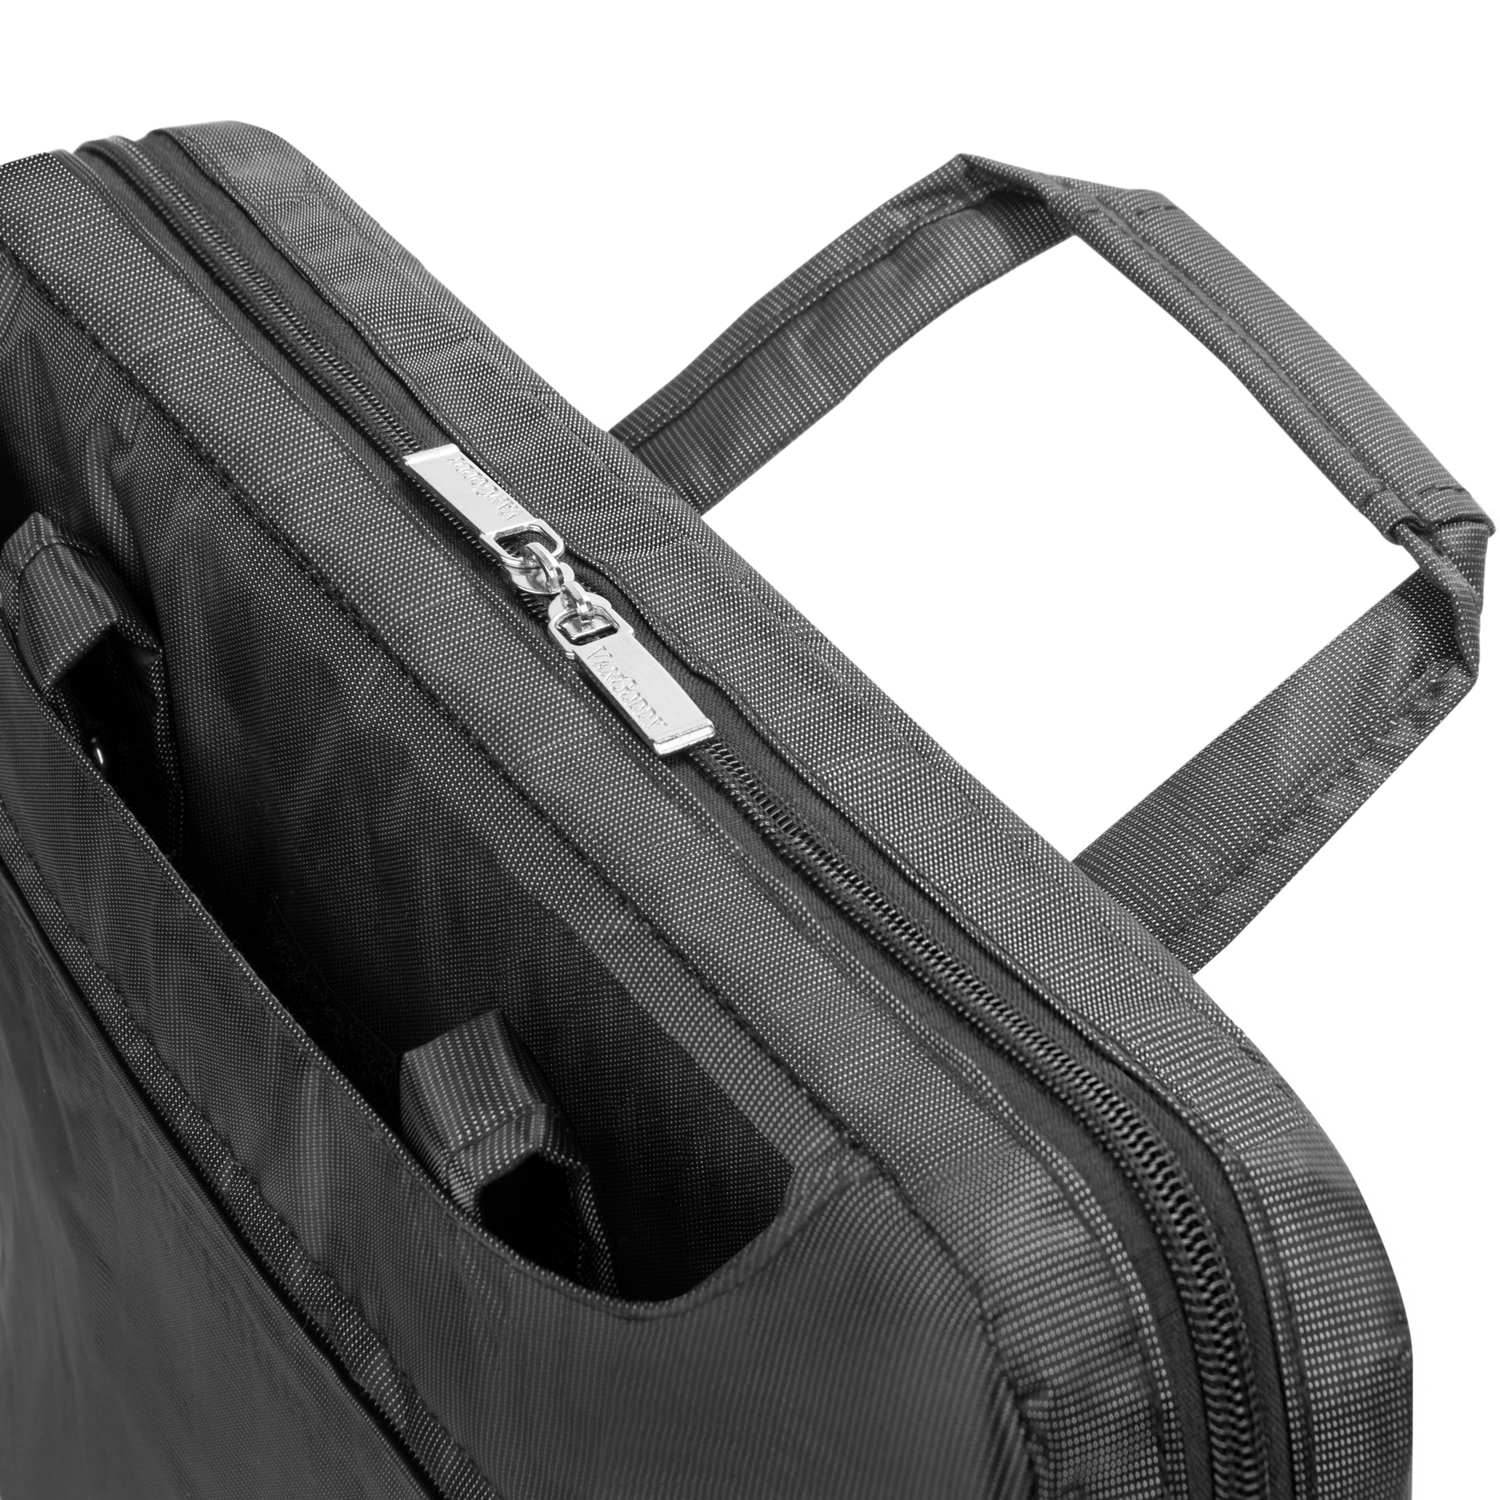 VANGODDY NineO Over the Shoulder Notebook Messenger Bag fits Dell 15, 15.6 inch Laptops